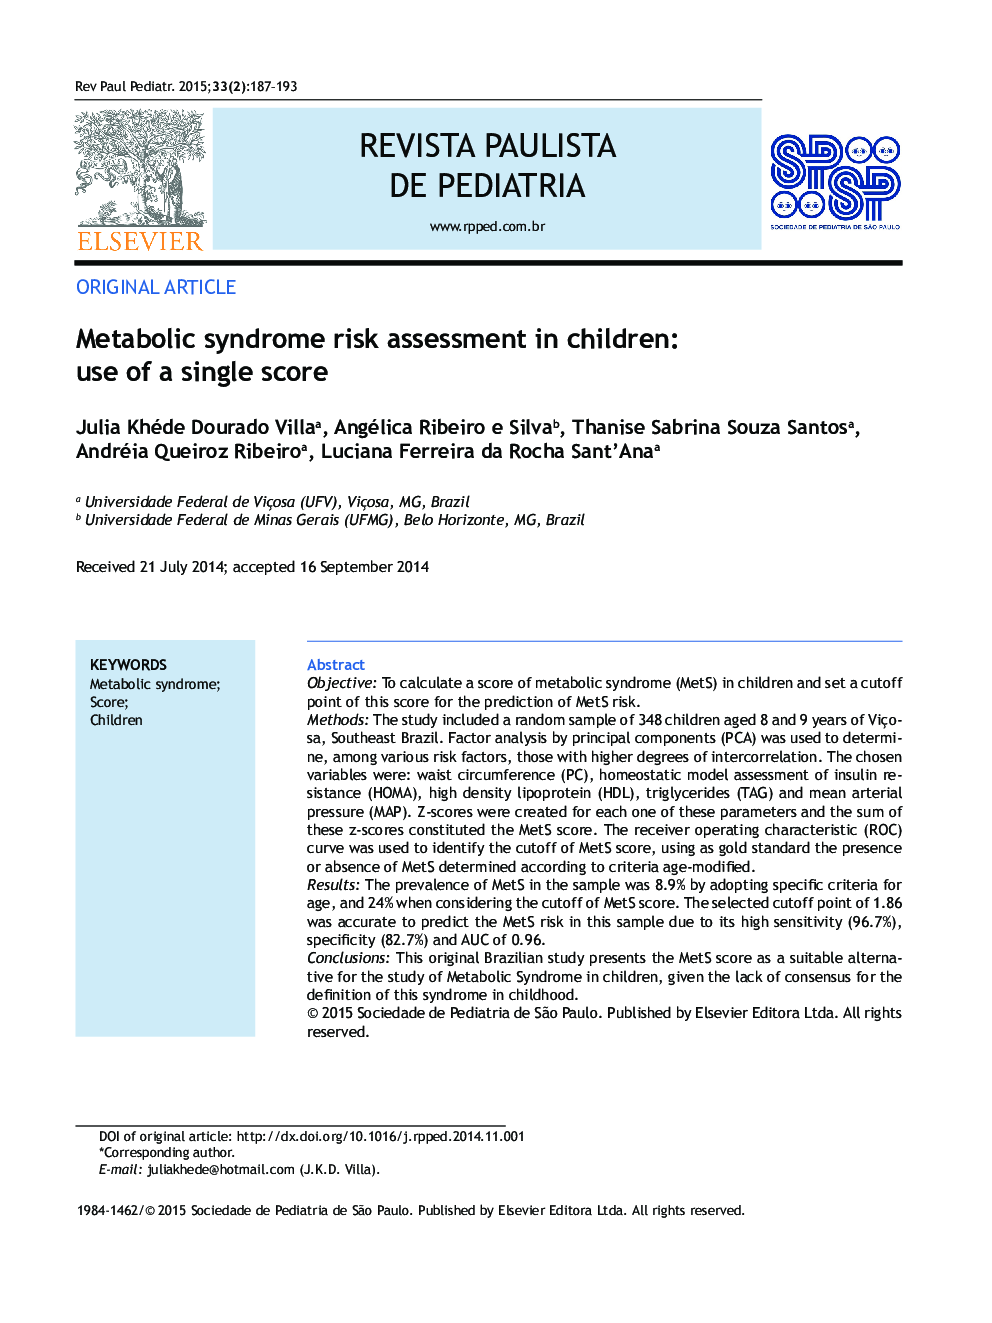 ارزیابی ریسک ابتلا به سندرم متابولیک در کودکان: استفاده از یک امتیاز واحد 